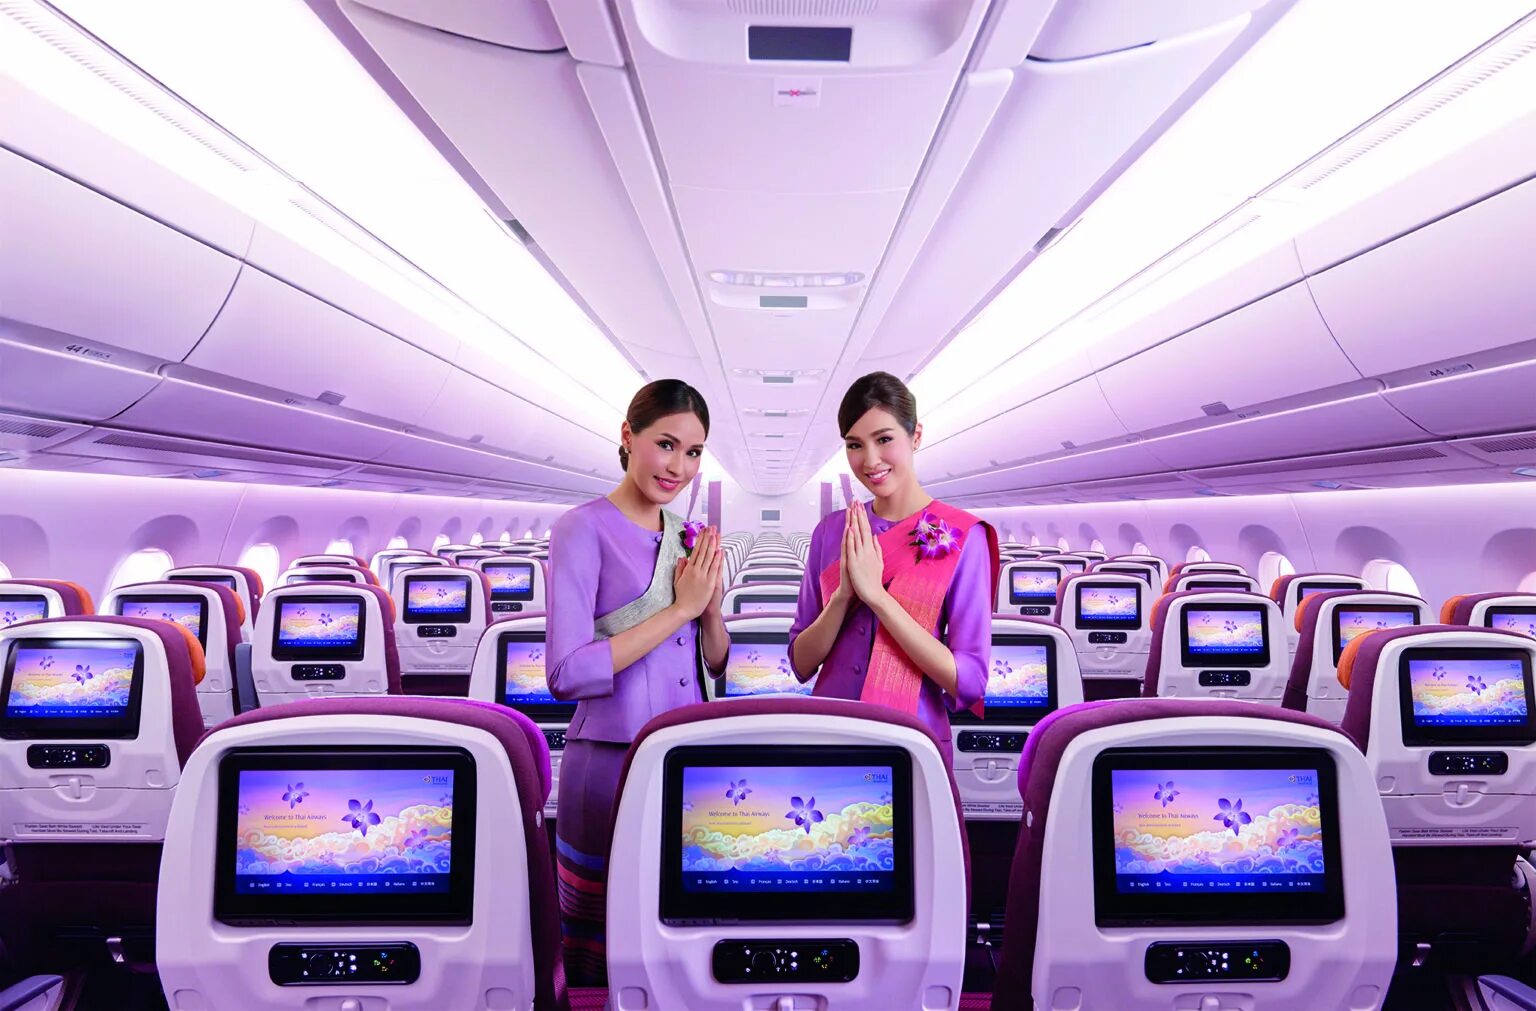 А330 тайские авиалинии. Авиакомпания Thai Airways. Самолет тайские авиалинии. Авиакомпания Thai Airways Пхукет Бангкок самолеты.